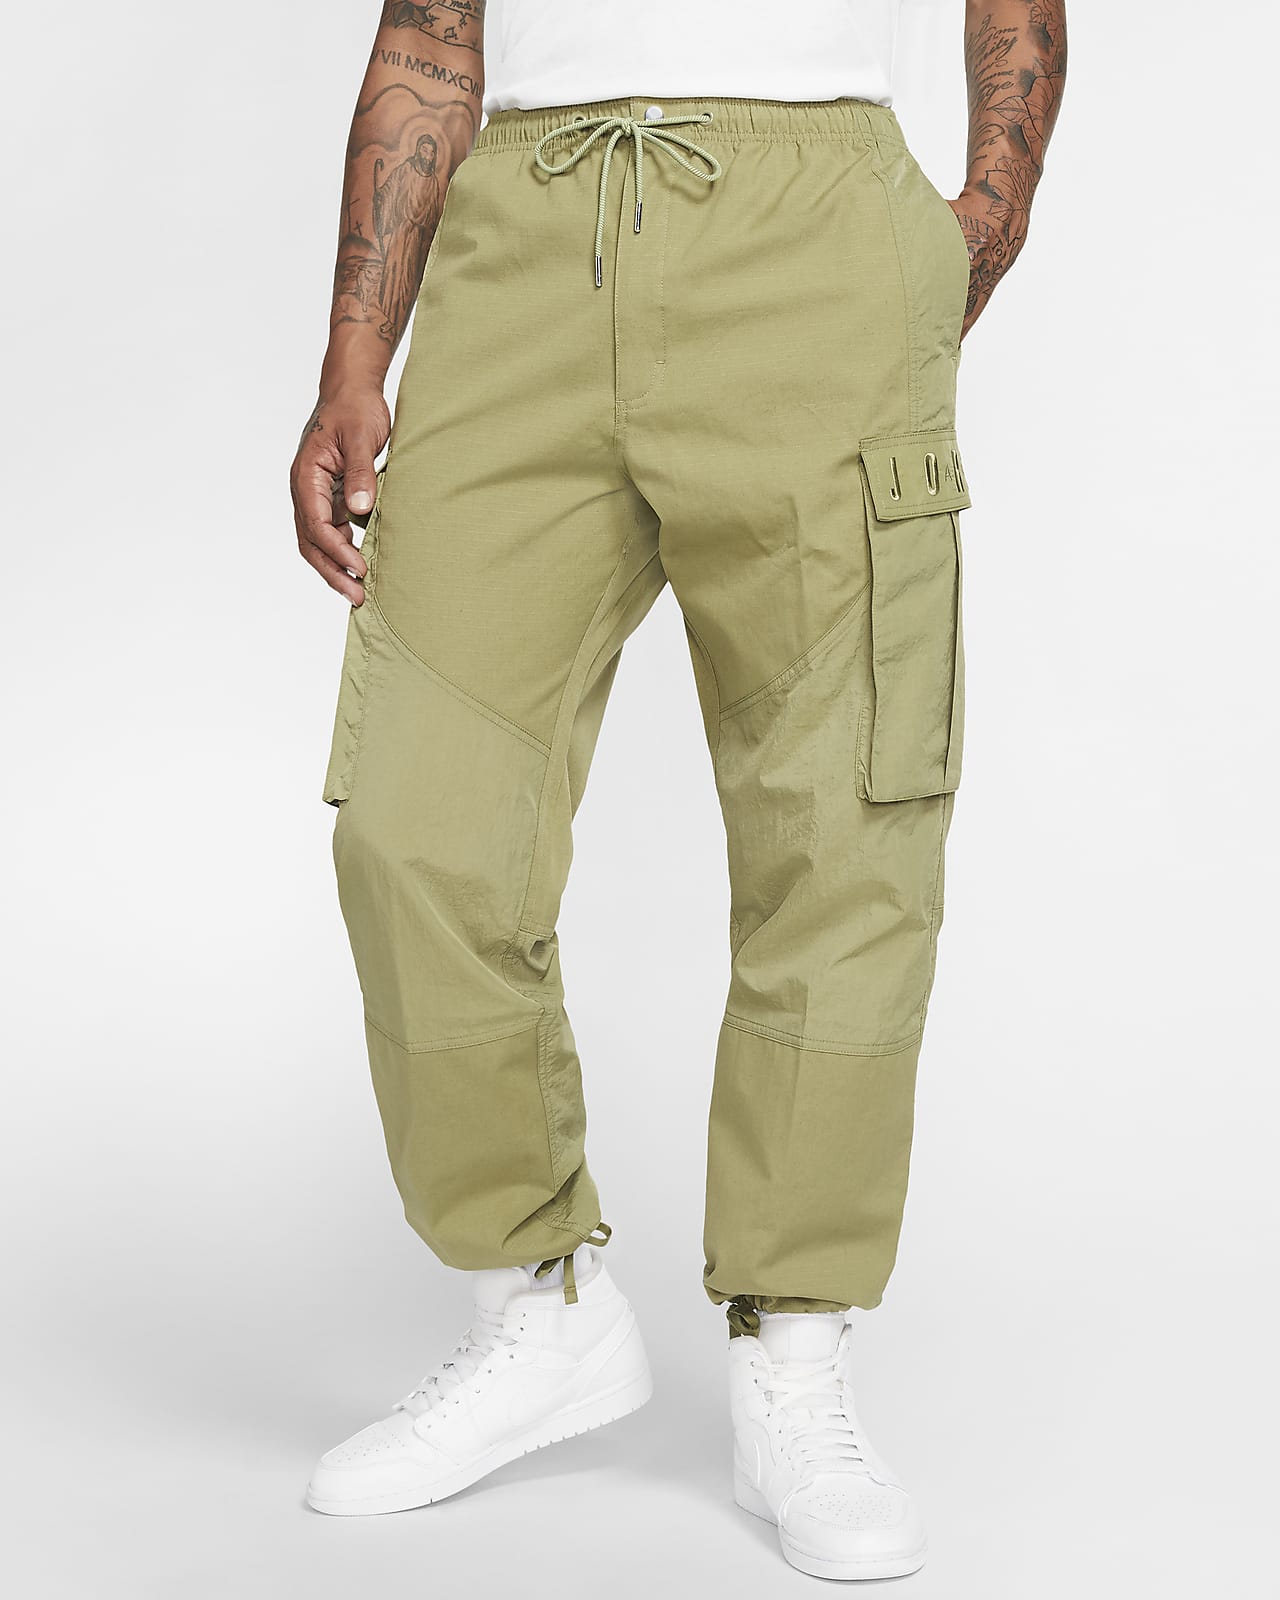 Shopping \u003e nike green cargo pants, Up 